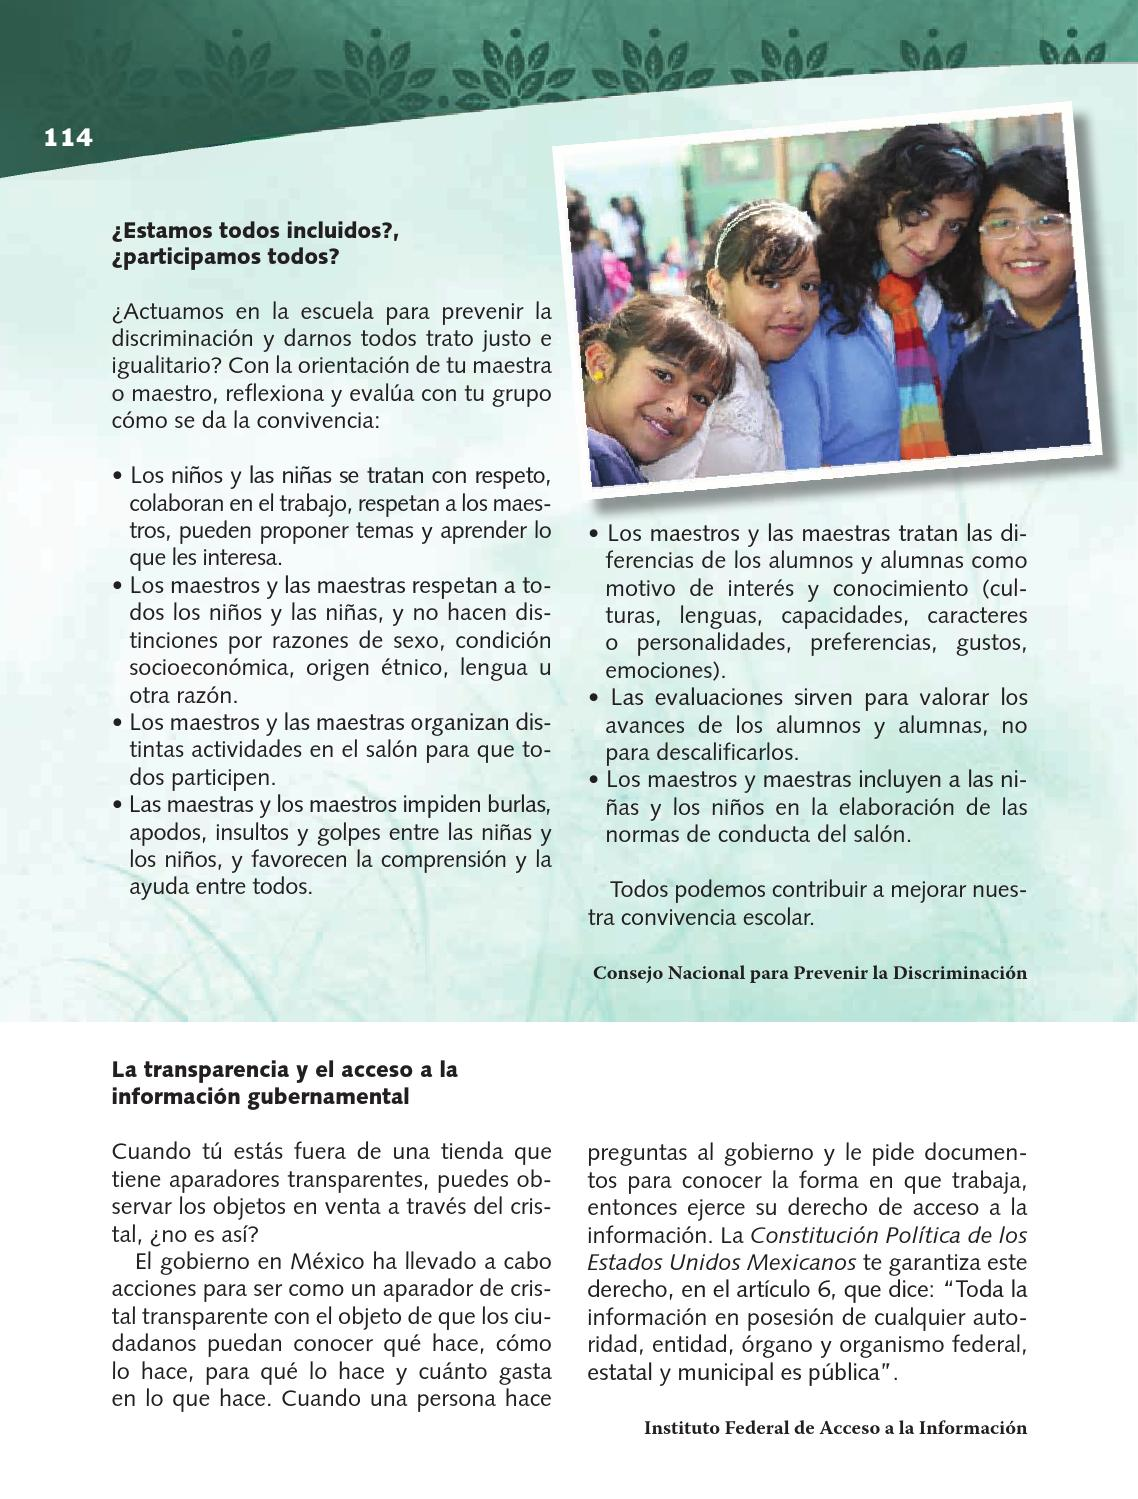  Para aprender más - Formación Cívica y Ética 4to Bloque 5 2014-2015